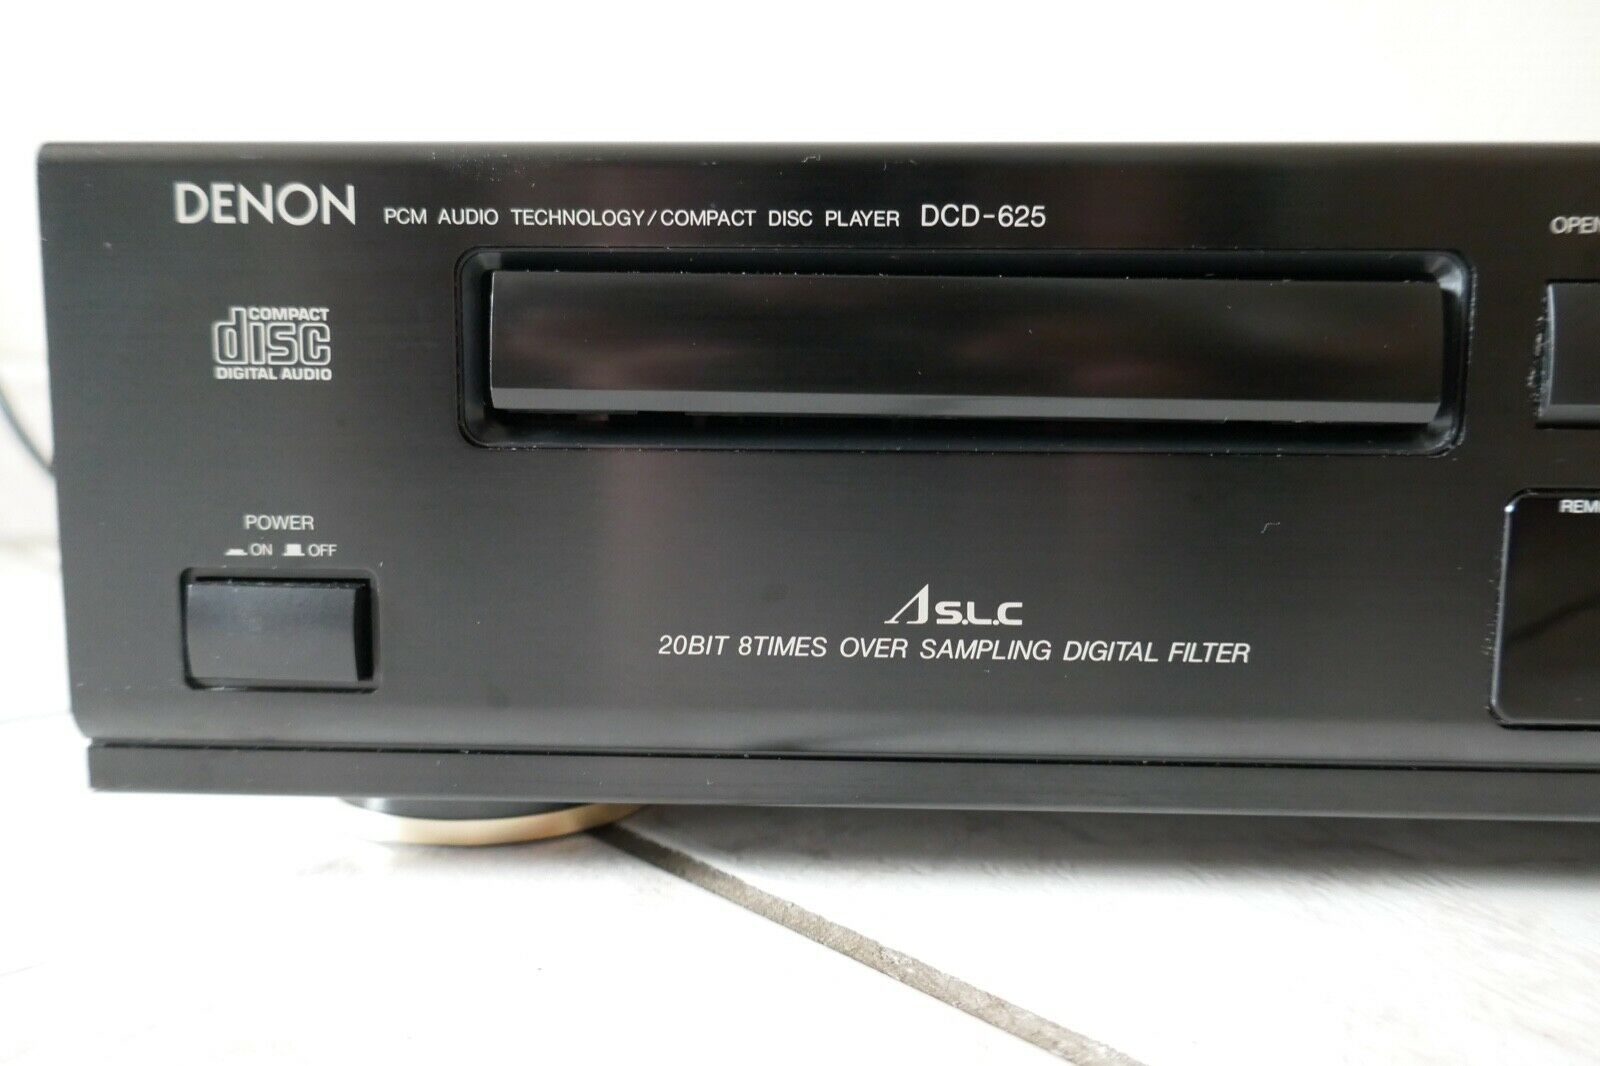 lecteur cd compact disc player denon dcd-625 vintage occasion